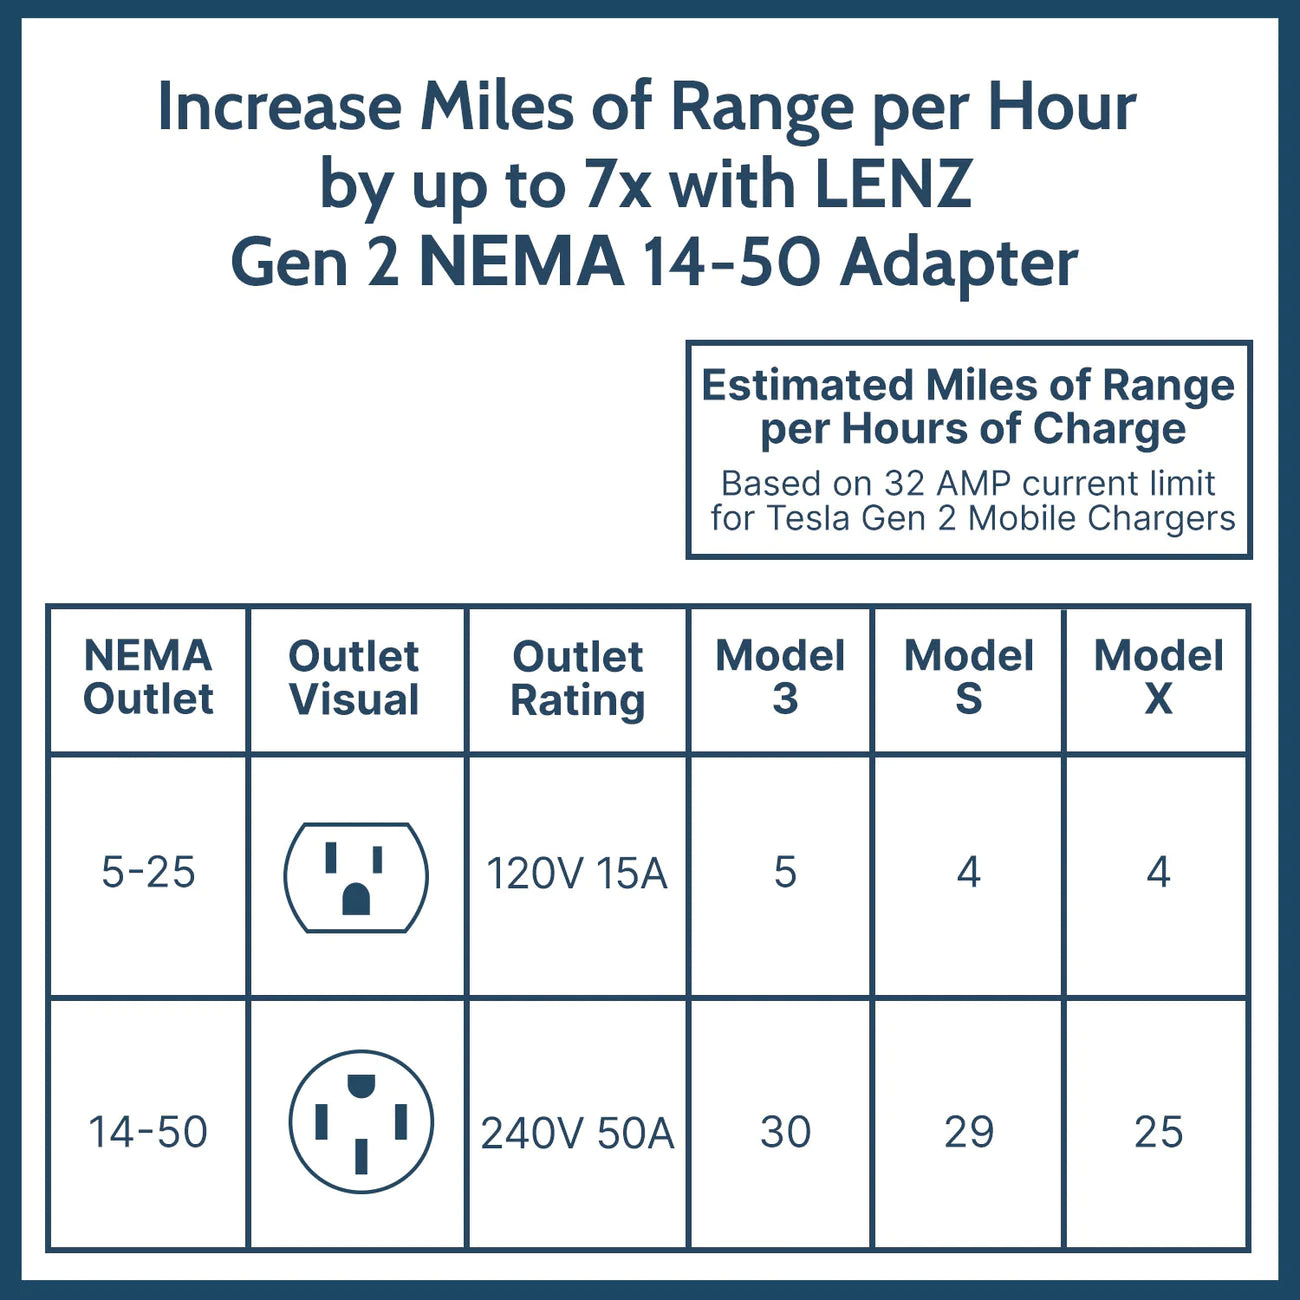 Tesla NEMA 14-50 Gen II Mobile Connector Smart Adapter